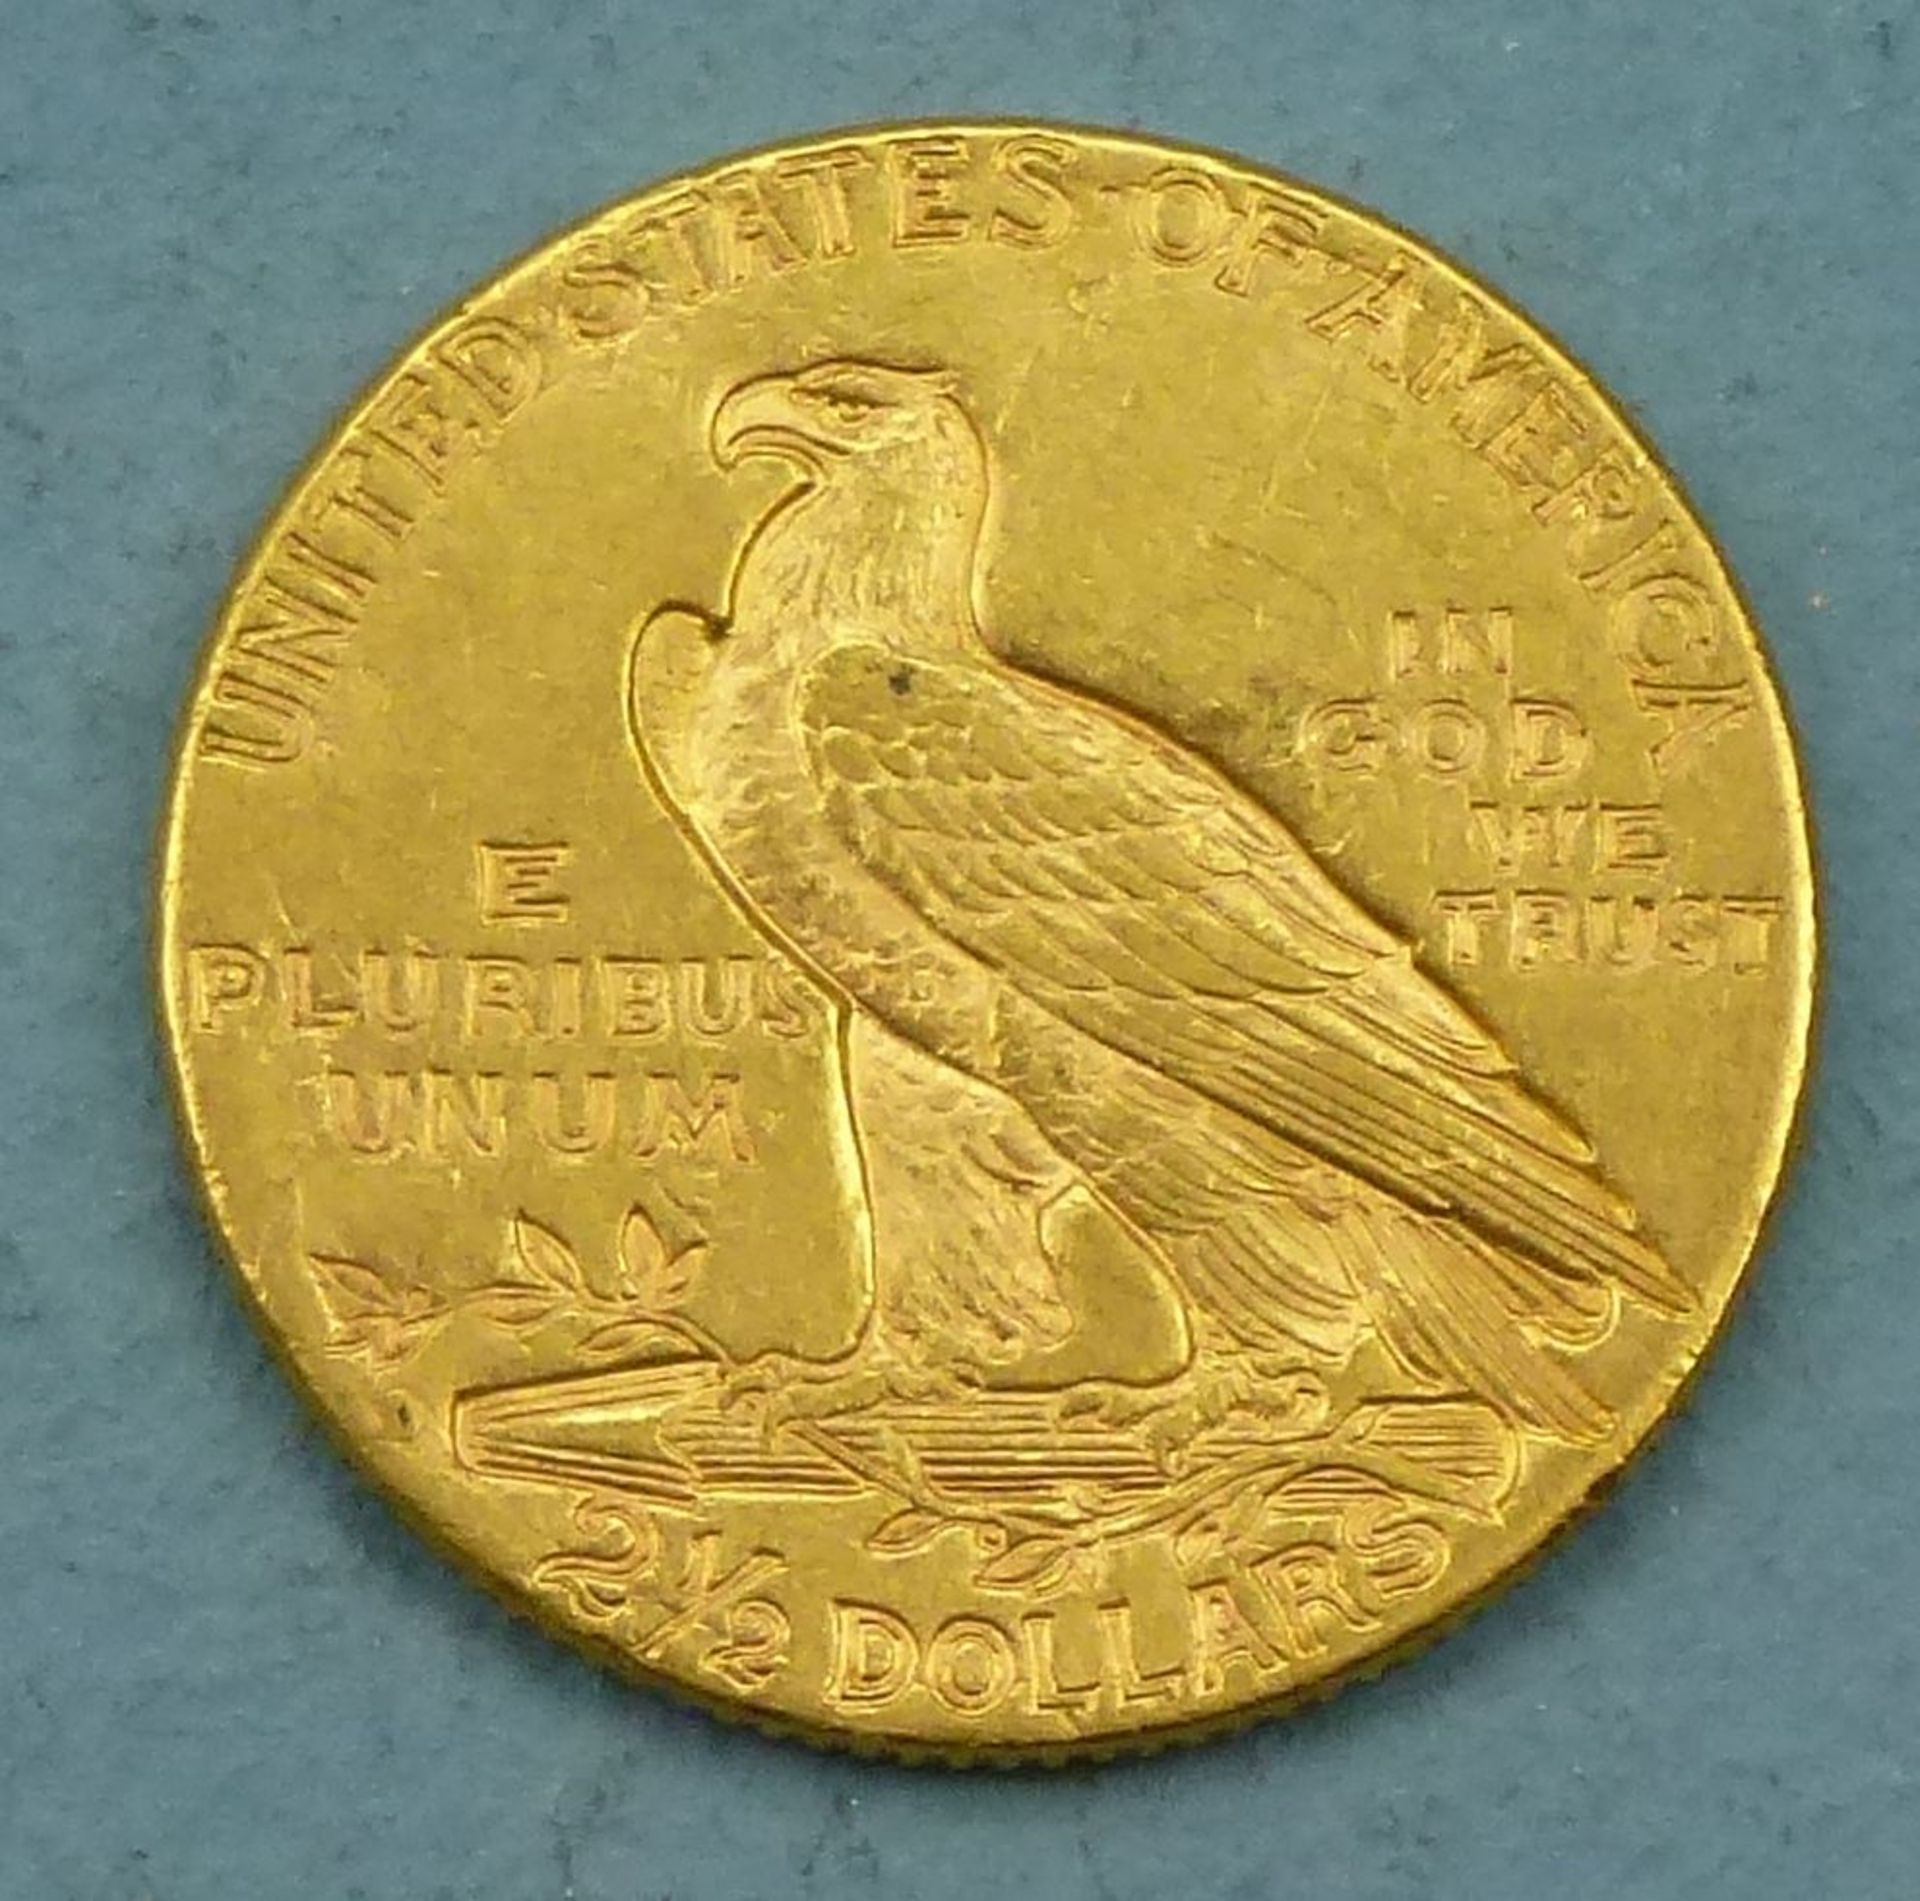 Goldmünze 2 1/2 Dollars "Indian Head", USA 1925900er, 4,15 g, guter Zustand